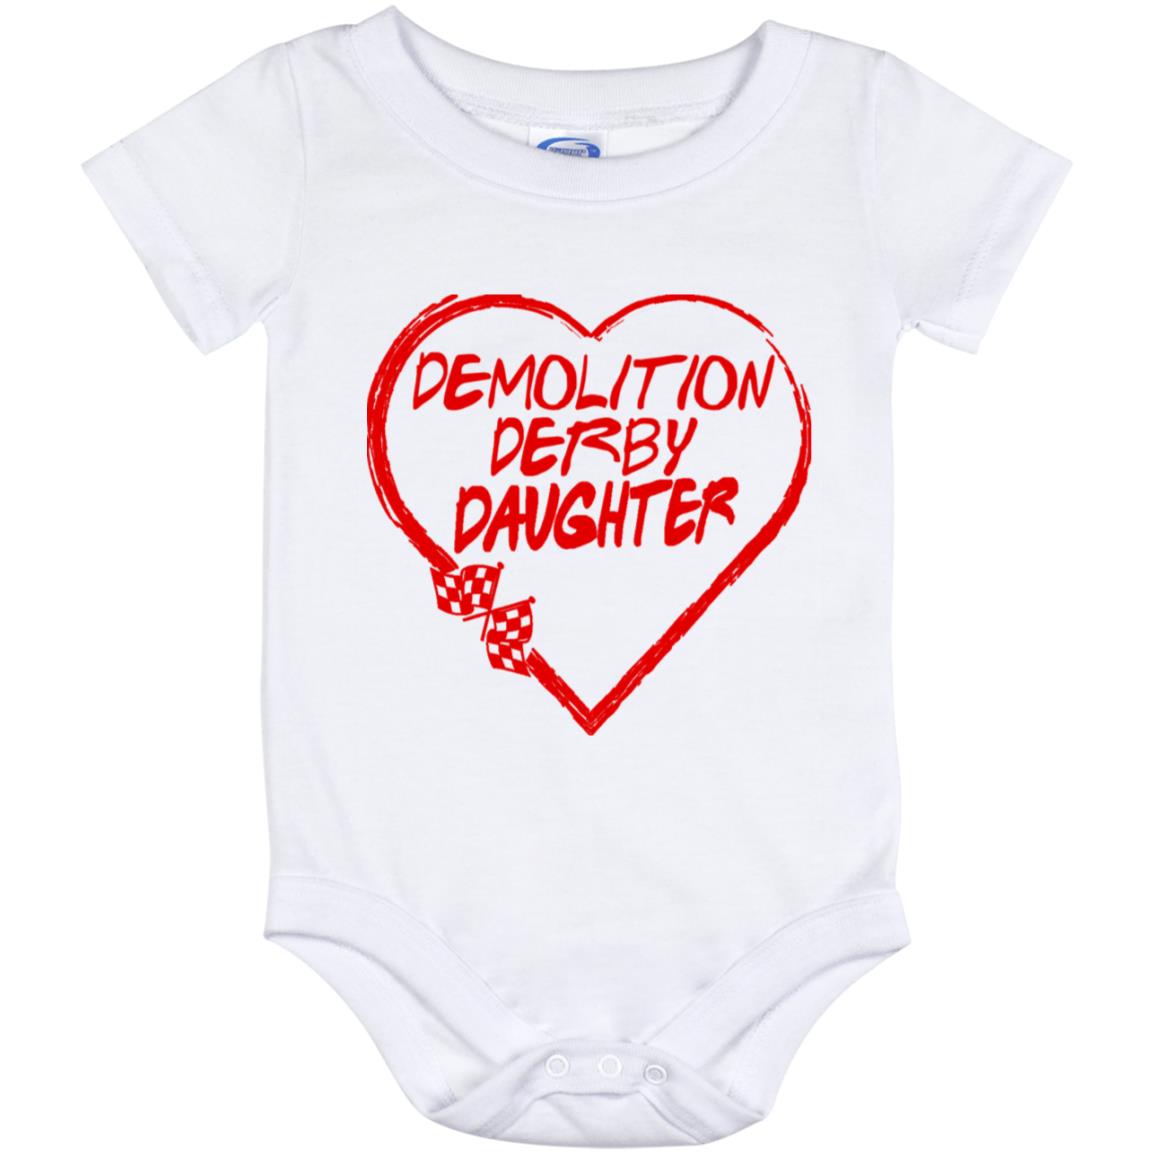 Demolition Derby Daughter Heart Baby Onesie 12 Month